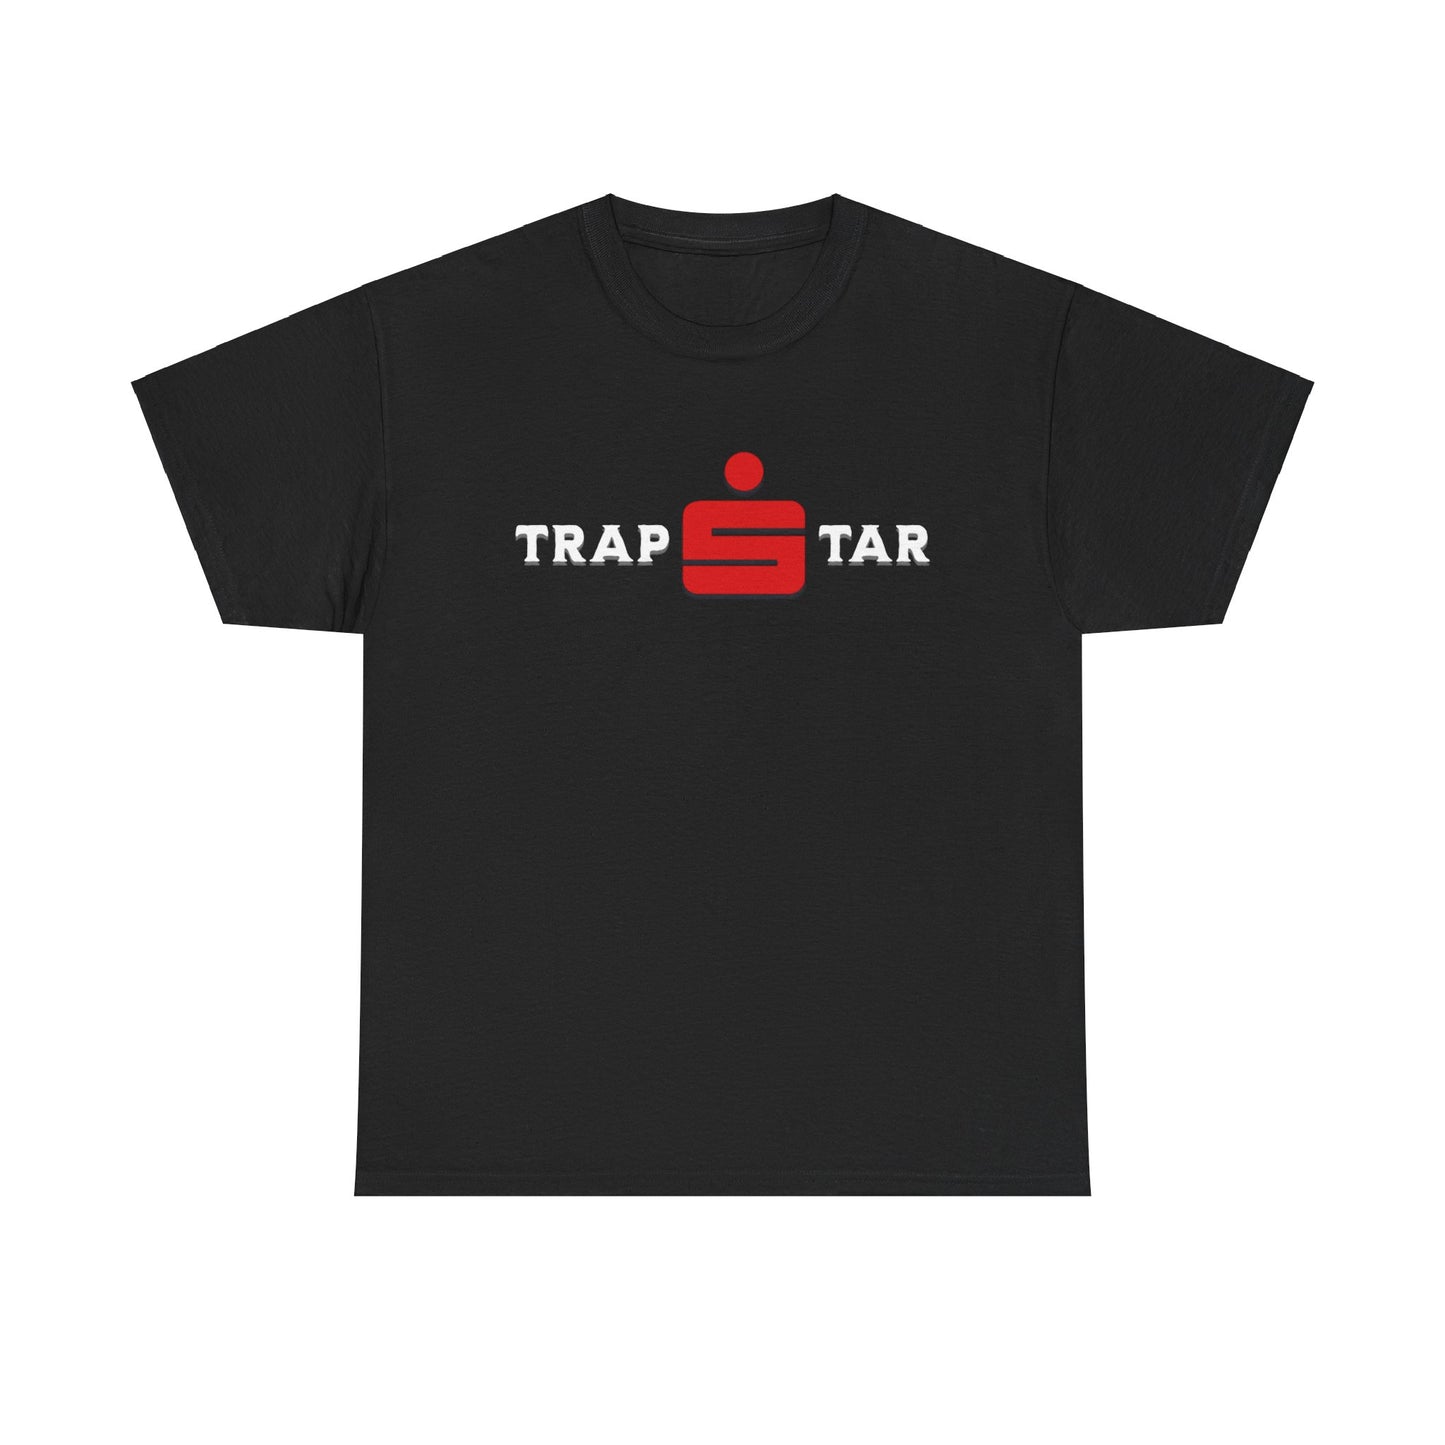 Entdecke das exklusive Trapstar T-Shirt mit Sparkassen-Logo! Hergestellt aus 100% Baumwolle für maximalen Komfort, bietet es urbanen Streetwear-Style und perfekte Passform. Ideal für Modebewusste, vielseitig kombinierbar, pflegeleicht und ein Must-Have in deiner Streetwear-Kollektion. Jetzt kaufen!